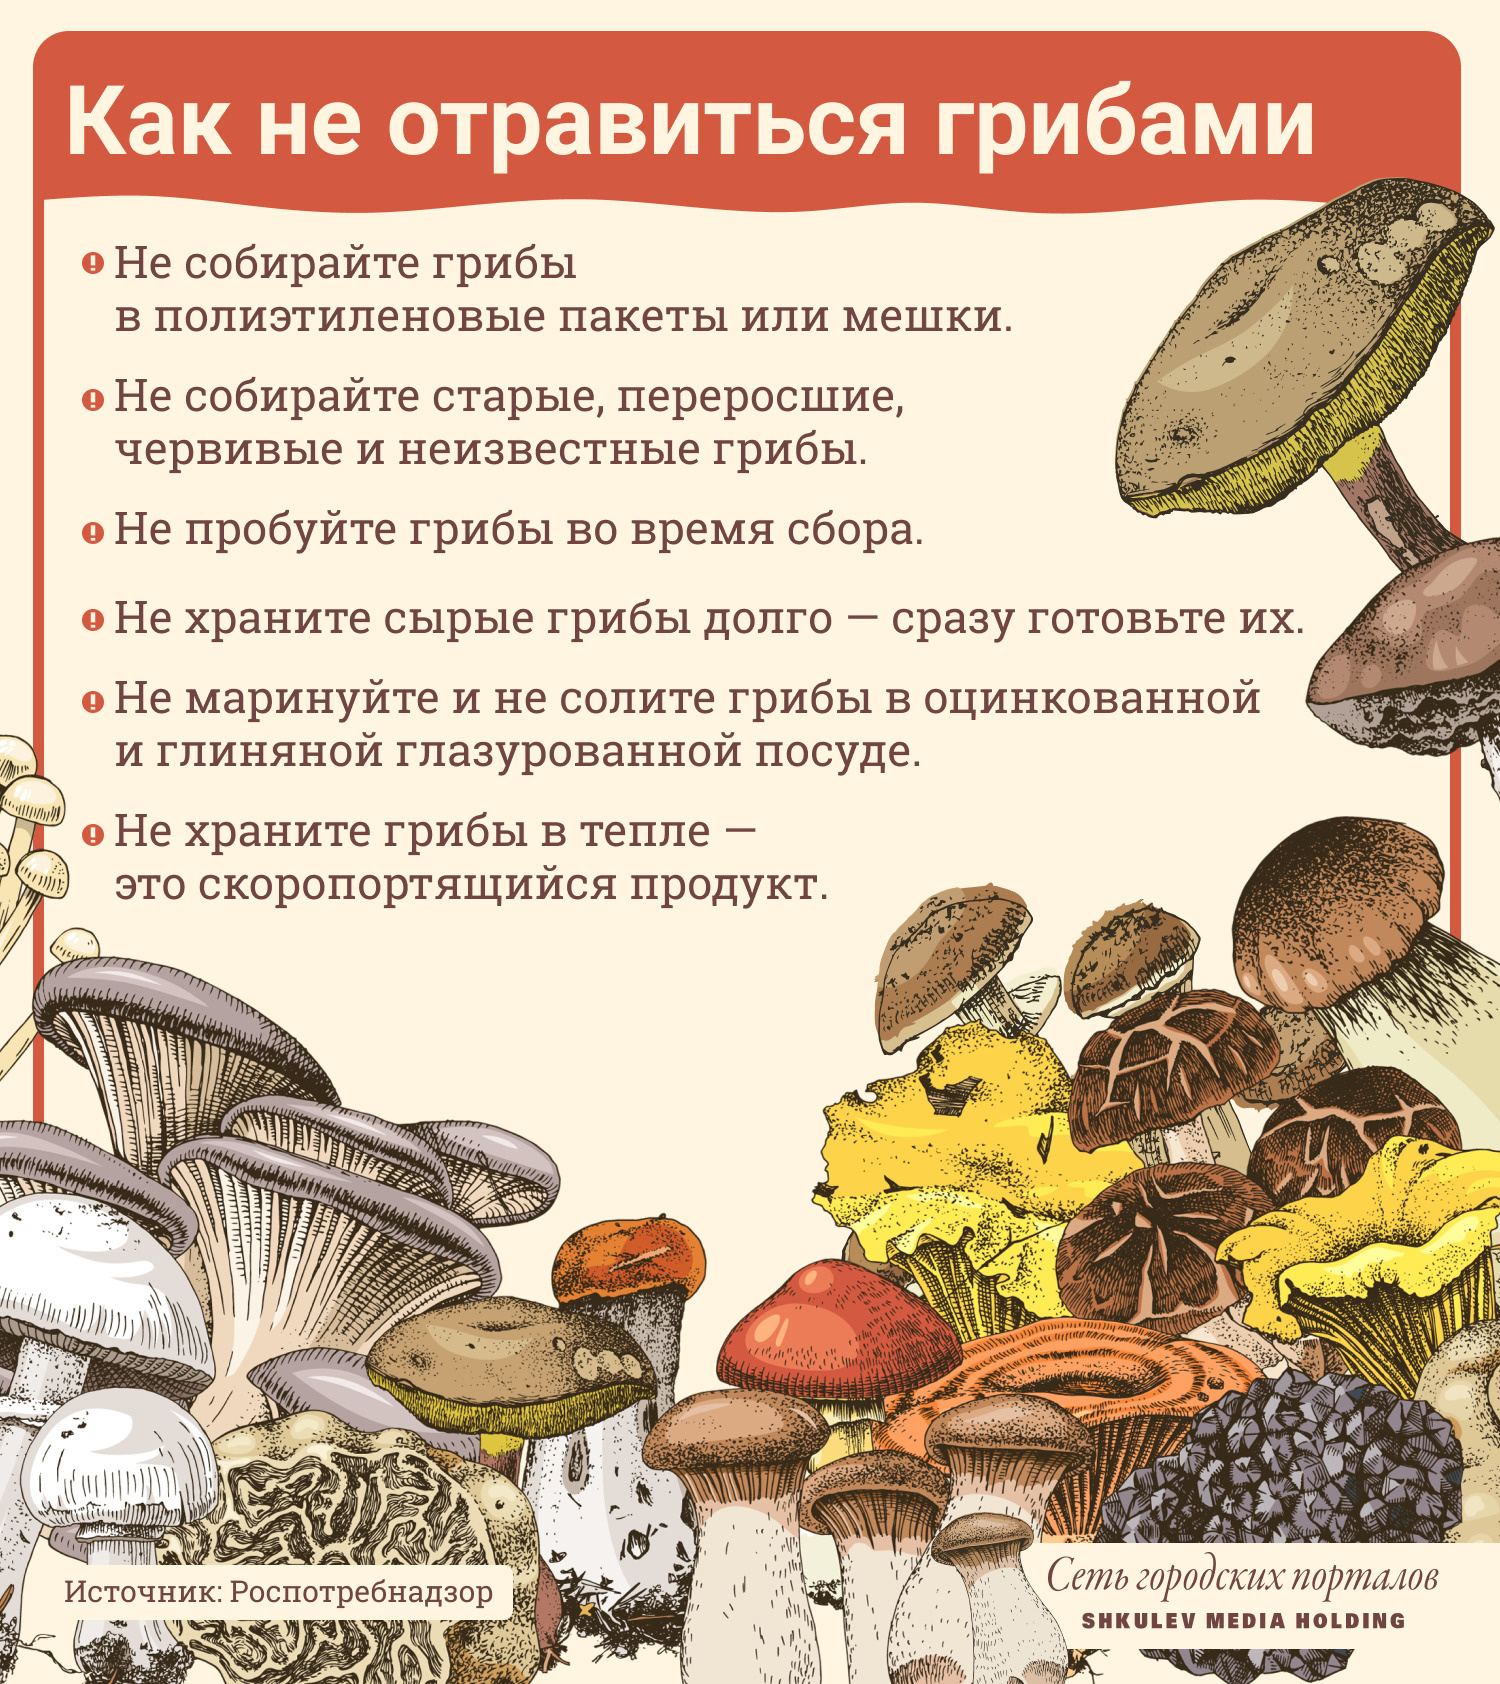 Какие грибы можно есть при подагре